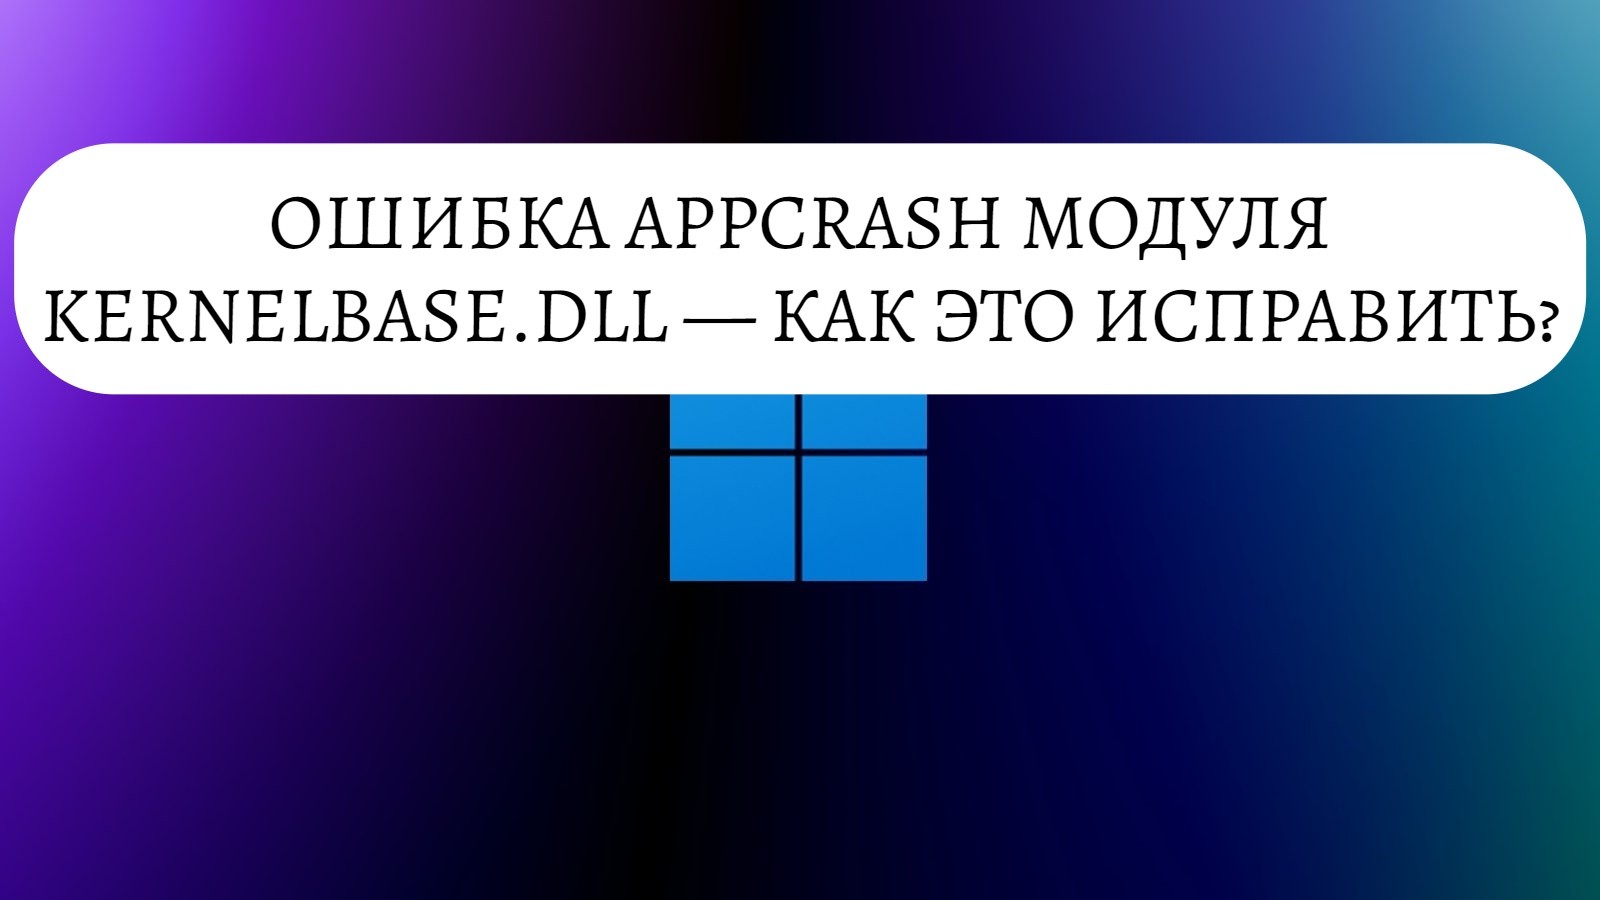 Ошибка AppCrash модуля KernelBase.dll — как исправить?